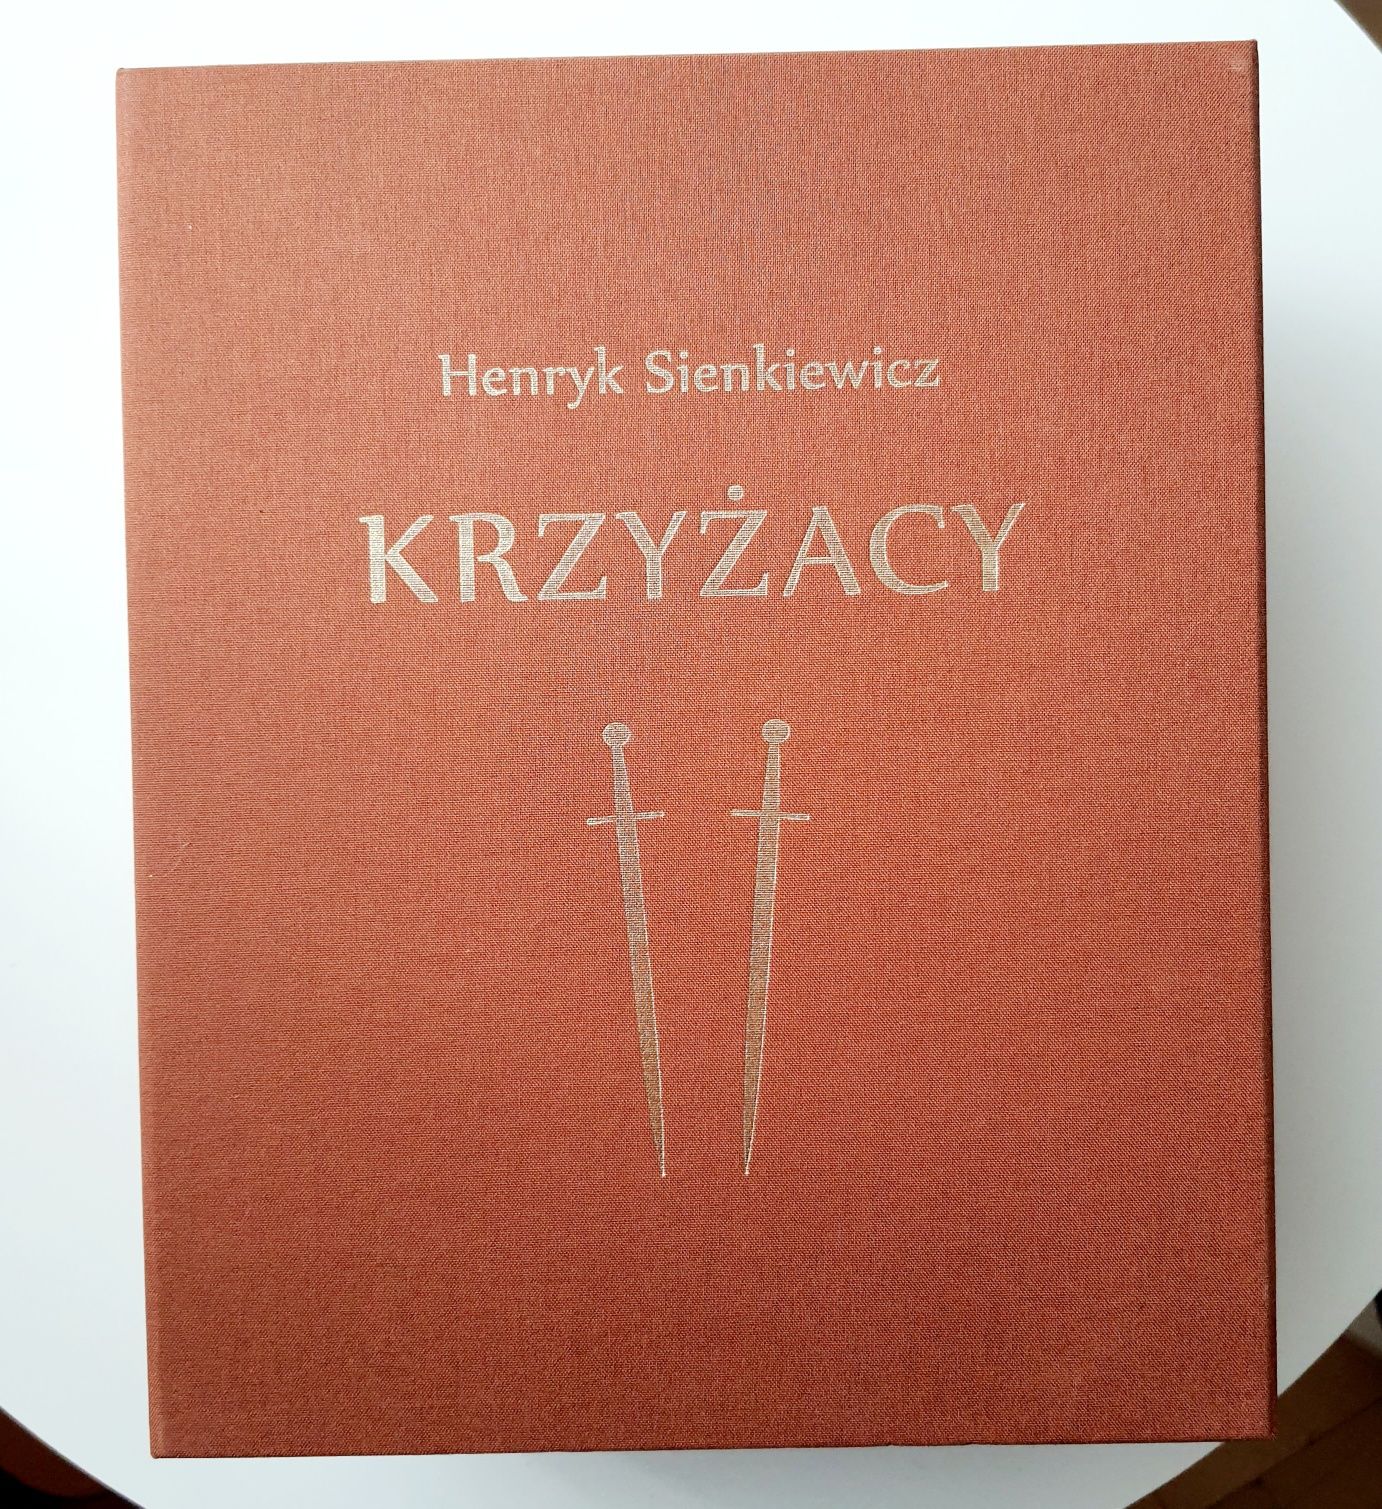 H. Sienkiewicz, Krzyżacy, wyd. rocznicowe, ed. limitowana 1 z 2000